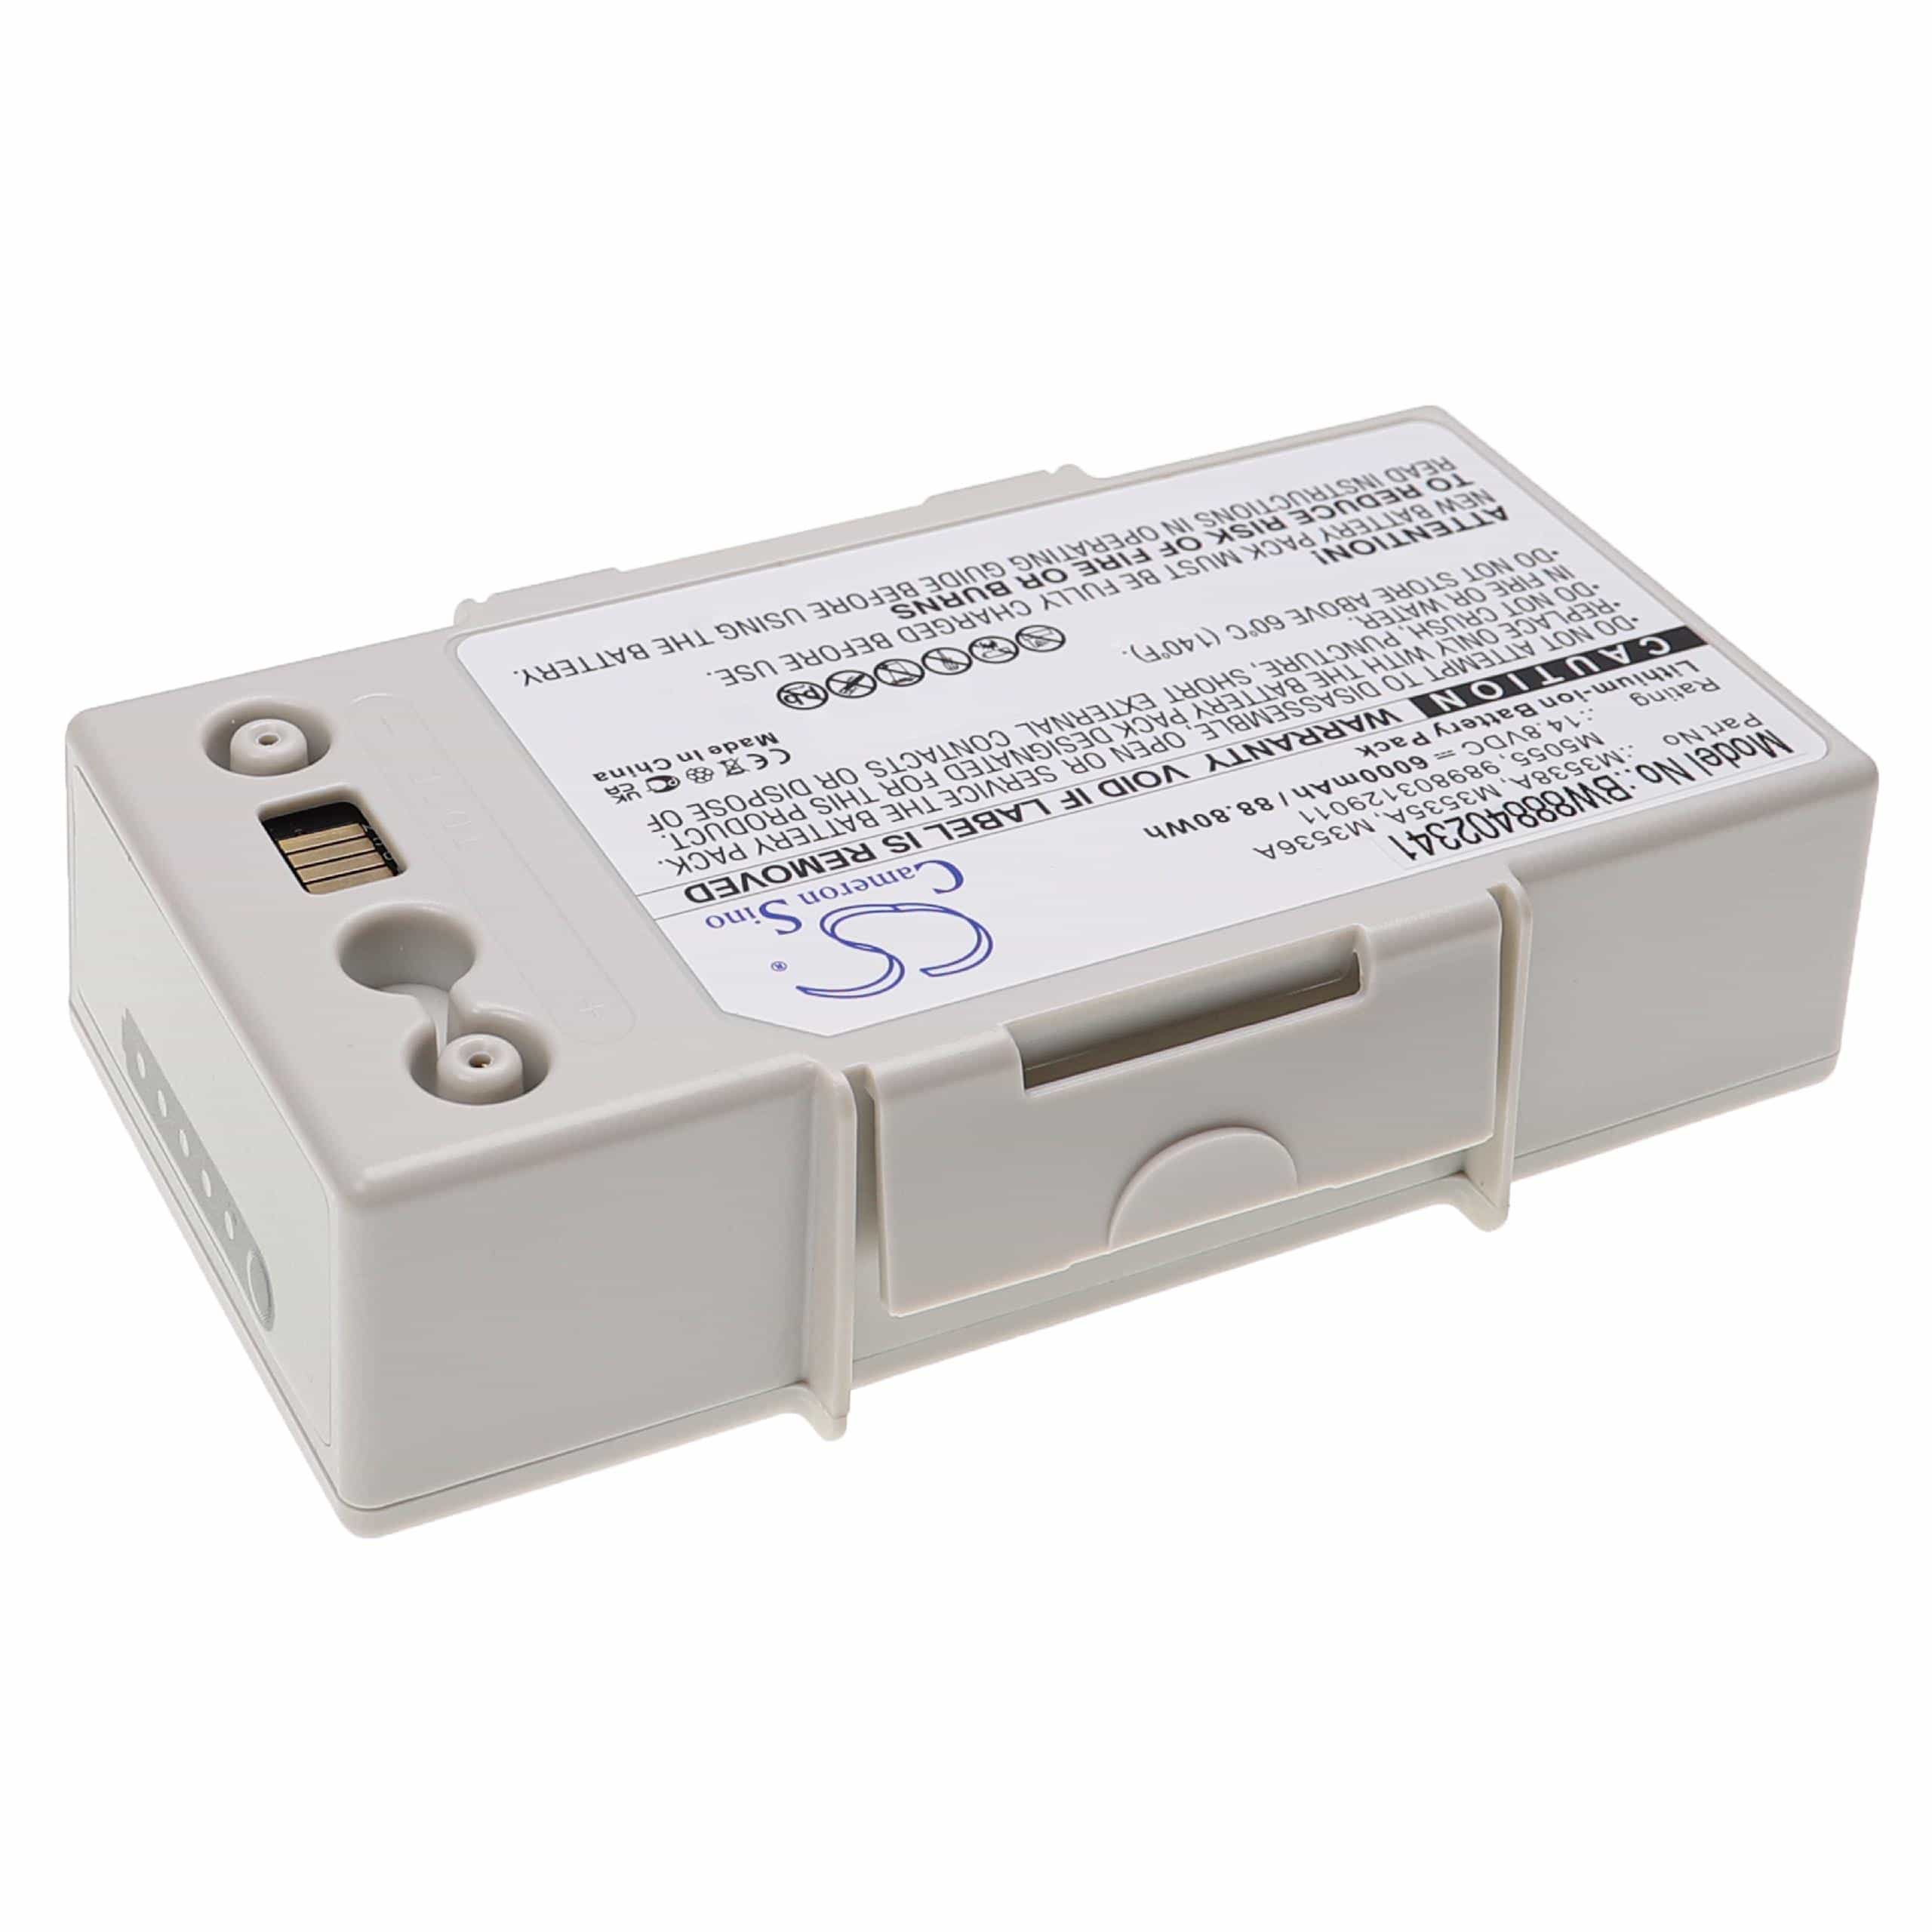 Batterie remplace Philips M3538A, M3536A, M3535A, 989803129011 pour appareil médical - 6000mAh 14,8V Li-ion